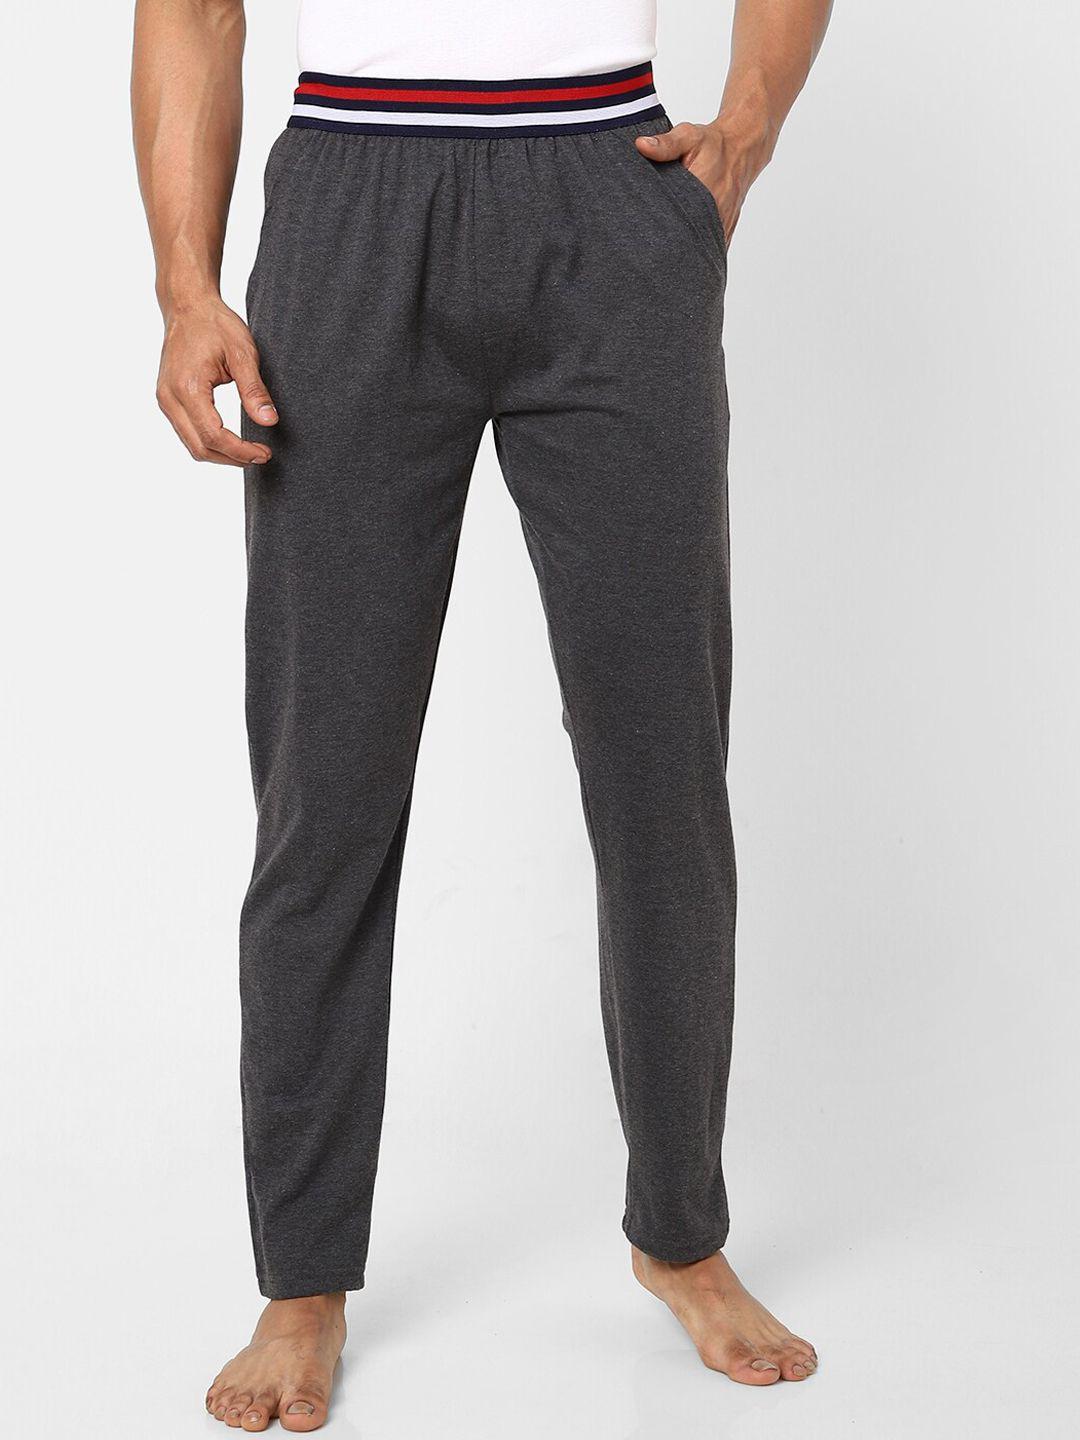 ajile-by-pantaloons-men-grey-melange-lounge-pants